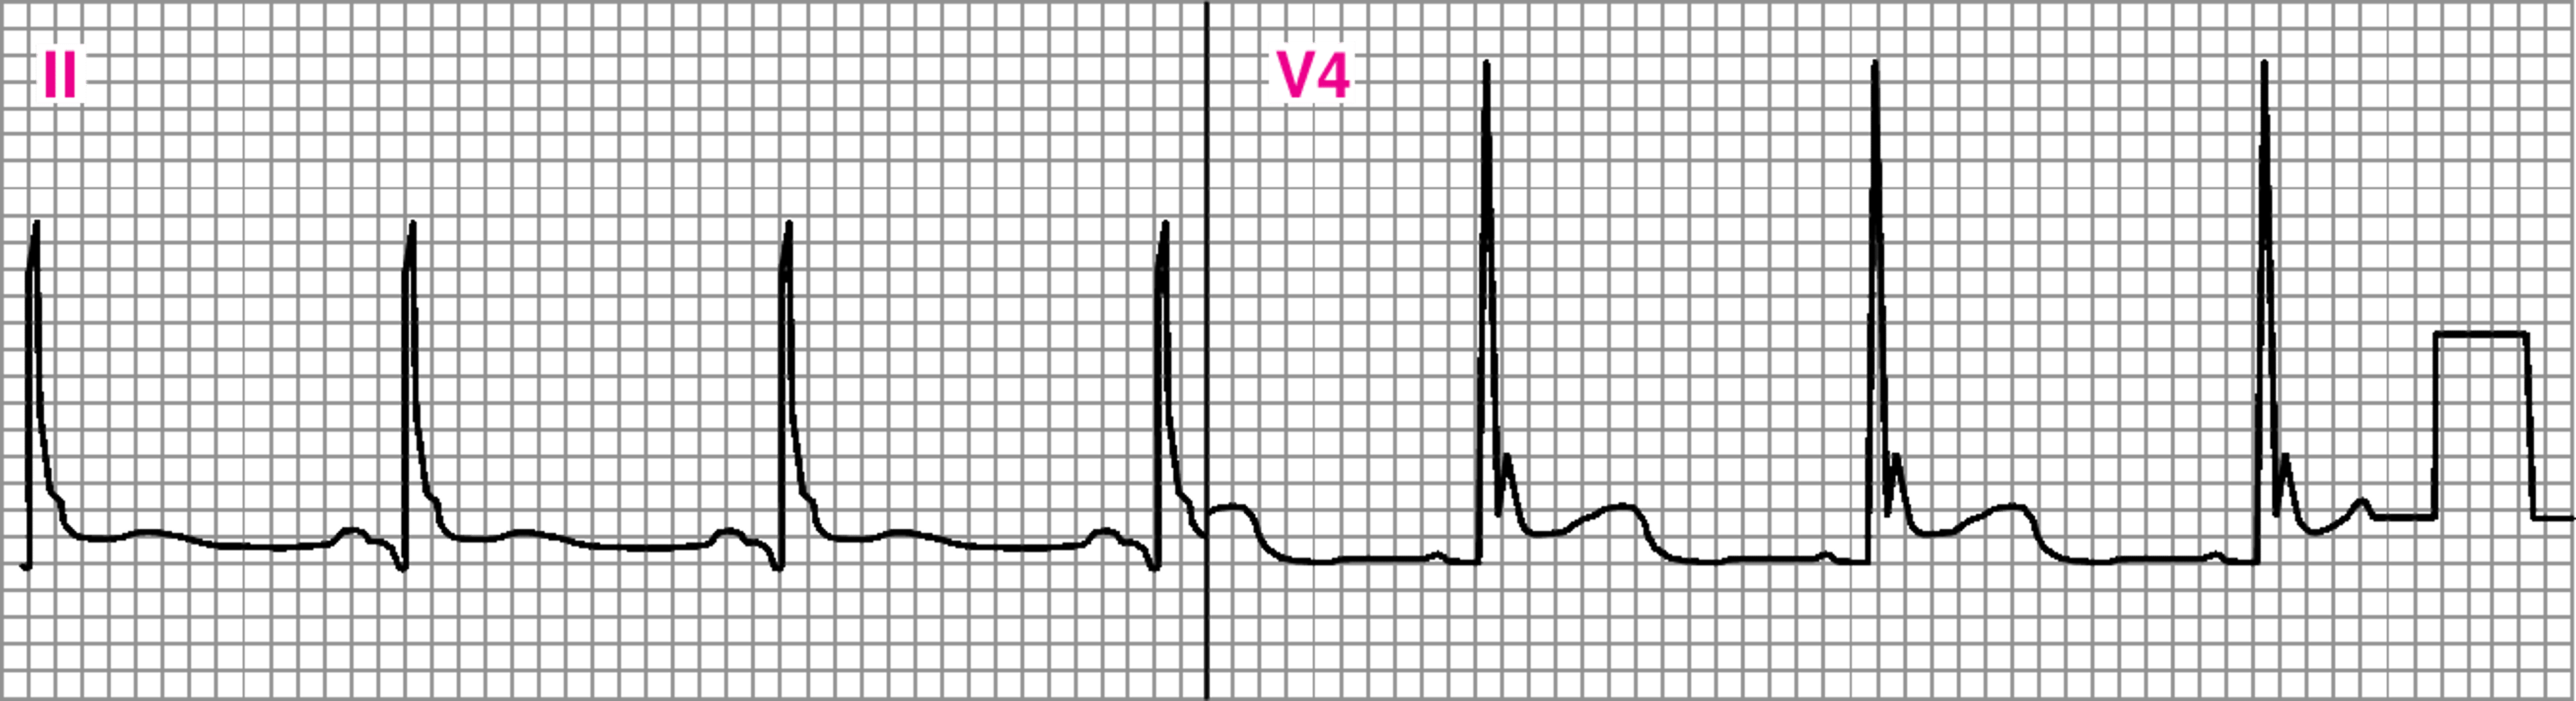 ECG bất thường hiển thị sóng J (Osborn) bất thường (V4).